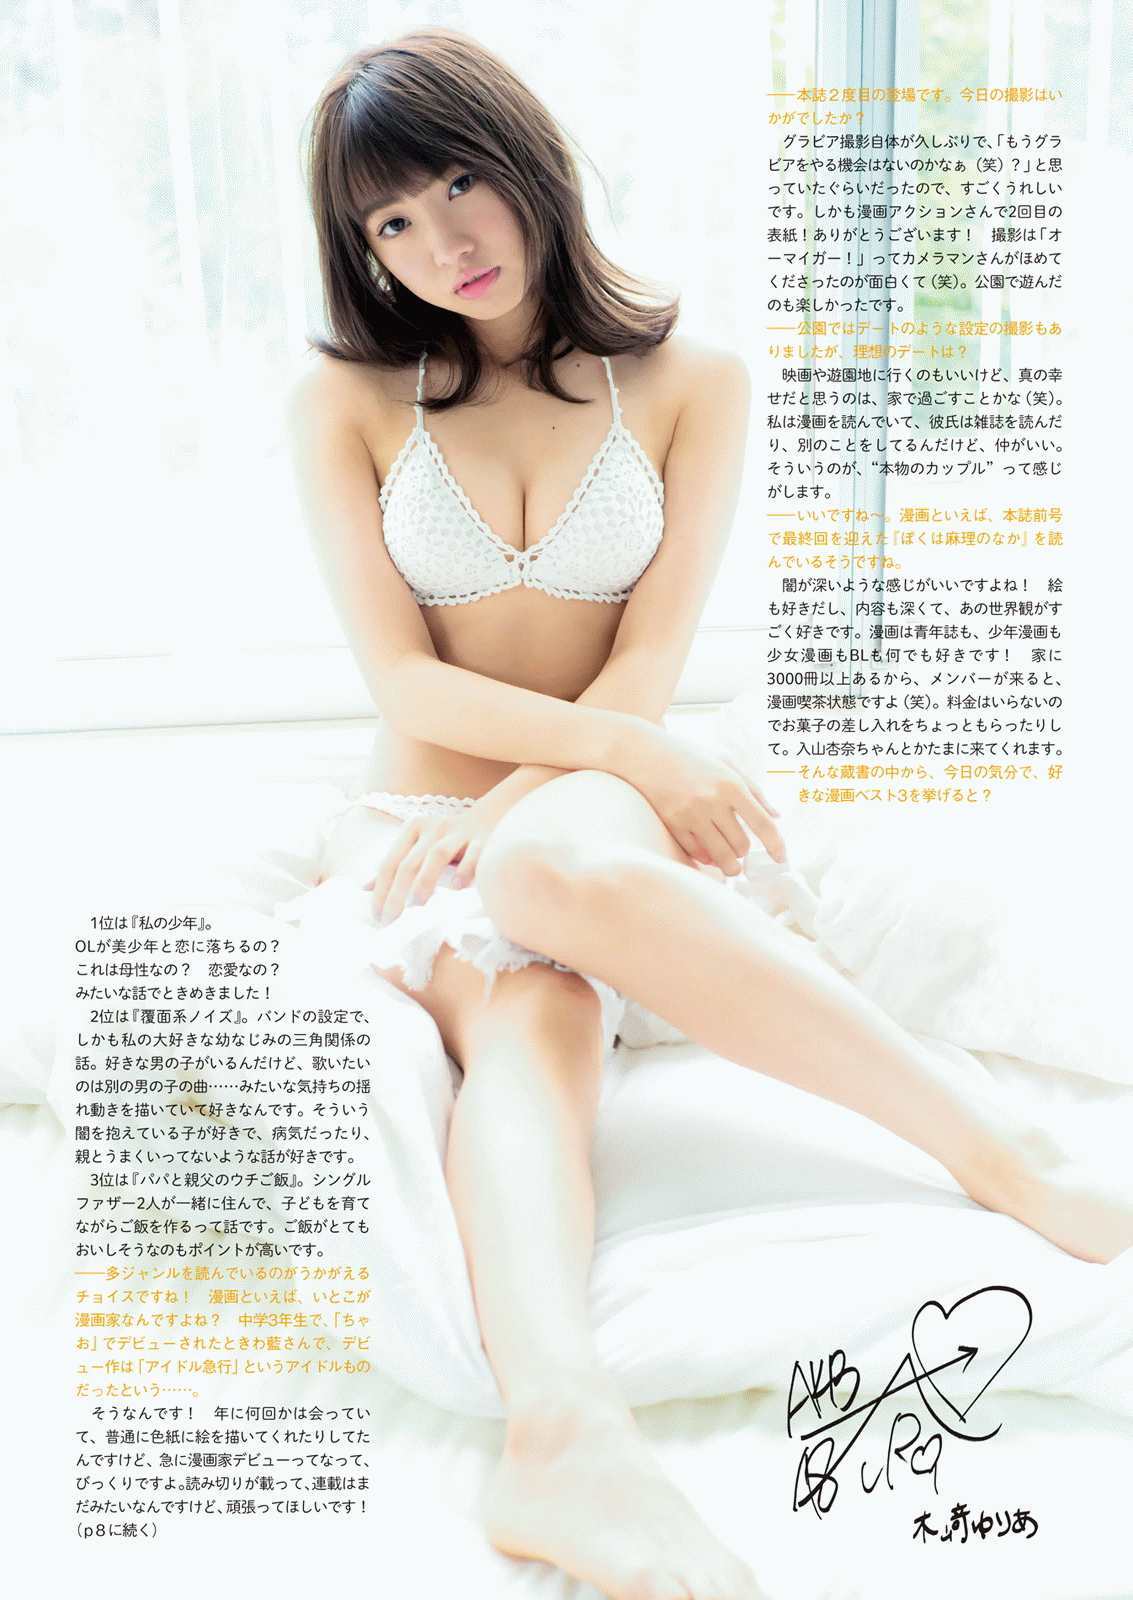 [网络美女]日本嫩模:木崎由利娅高品质写真作品个人分享(11P)